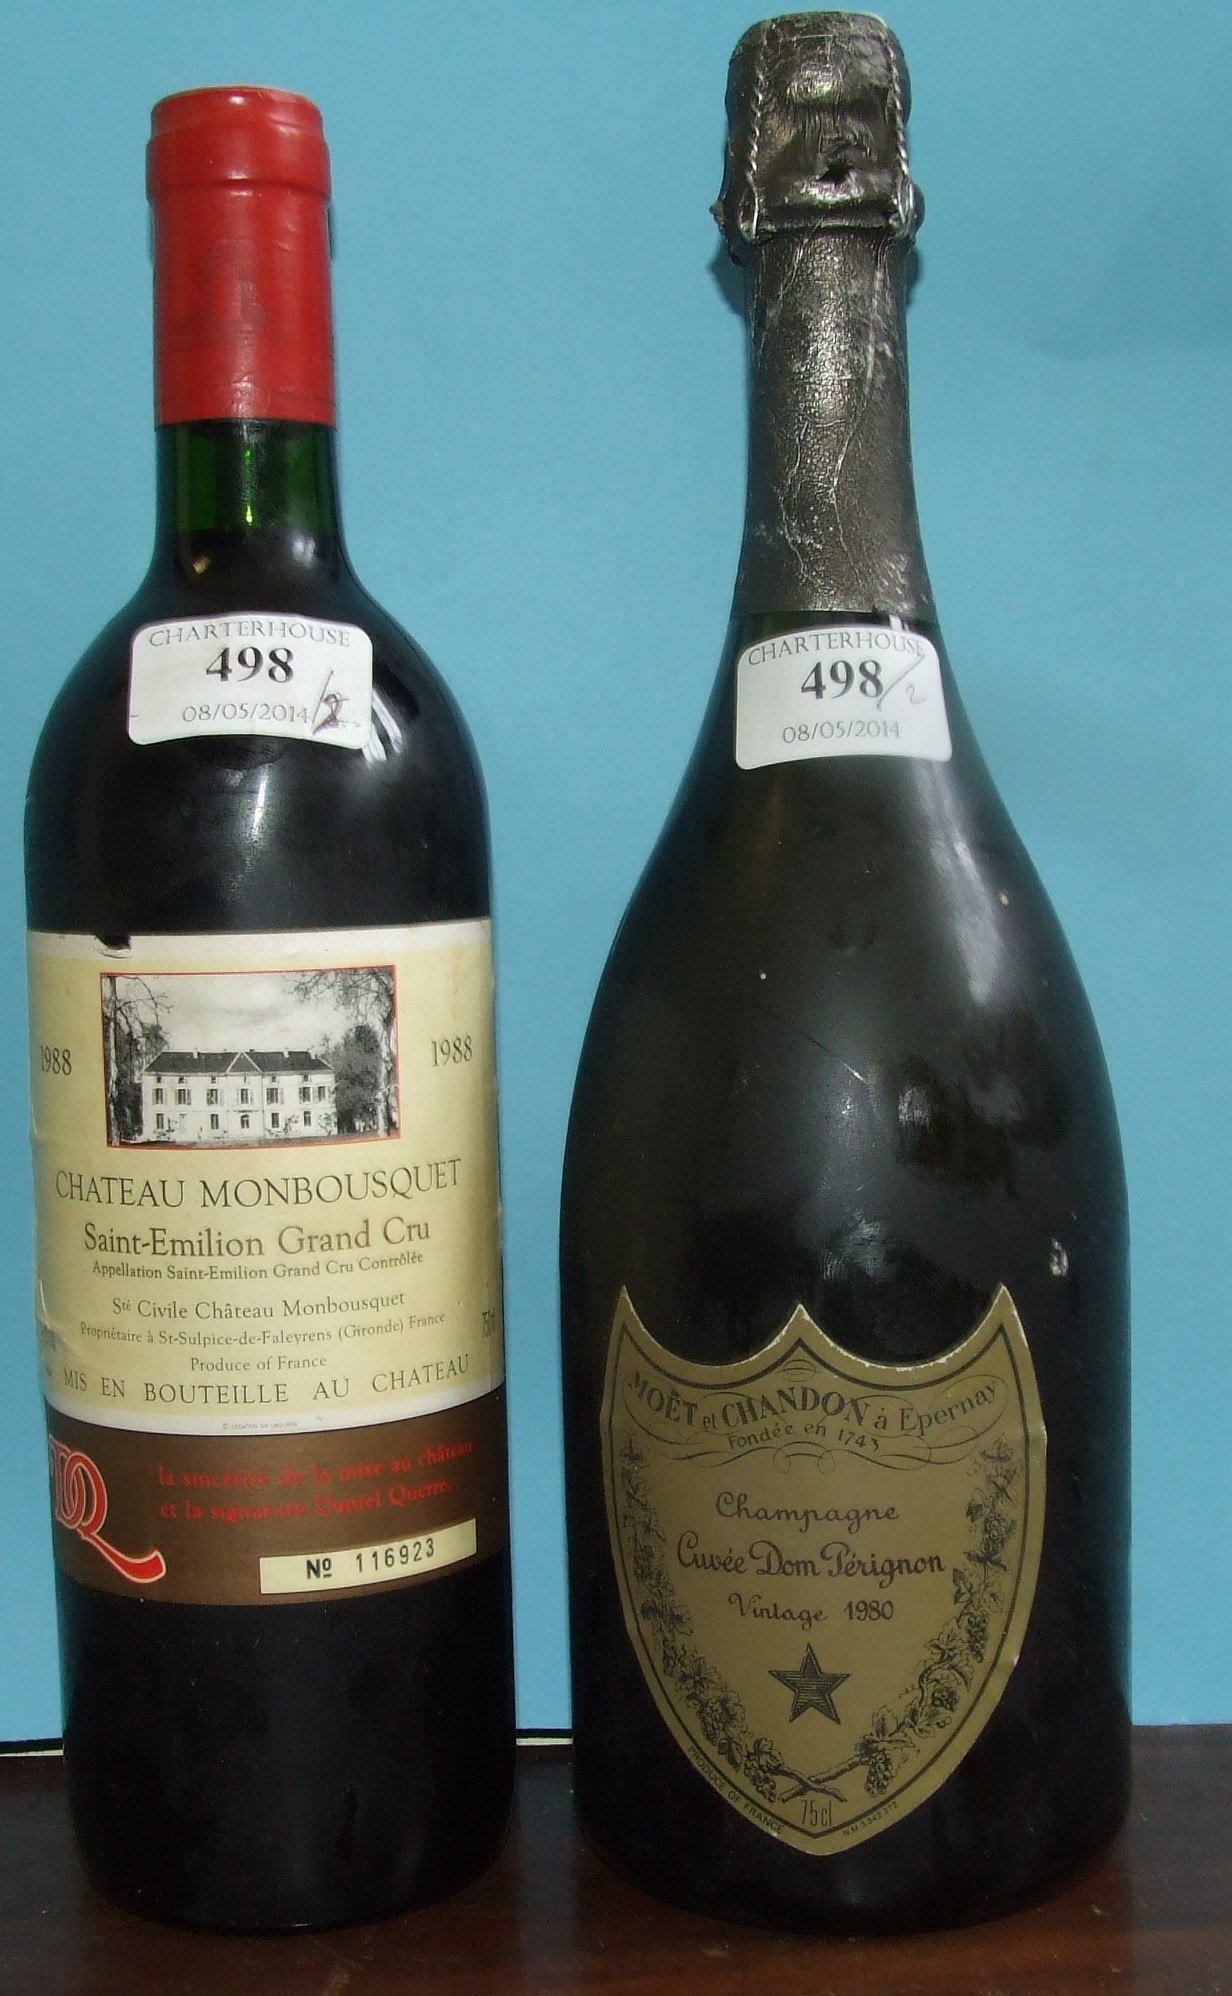 A bottle of Chateau Monbousquet Saint-Emilion Grand Cru, 1988, and a bottle of Moet & Chandon